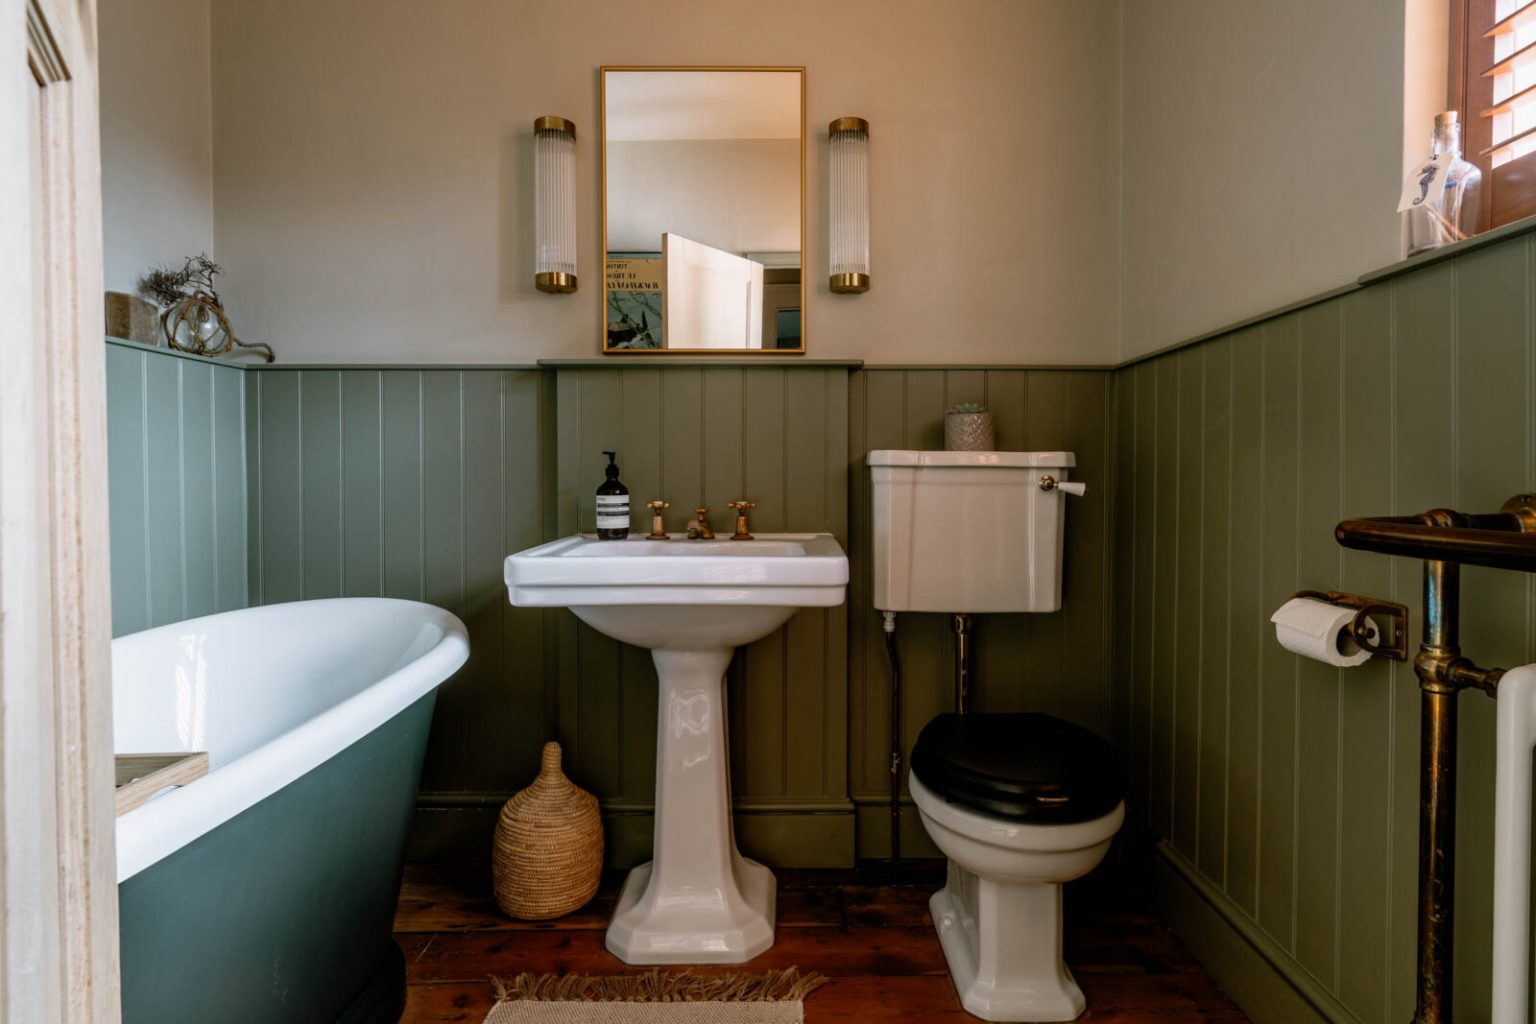 salle de bain vintage anglaise décoration classique chic